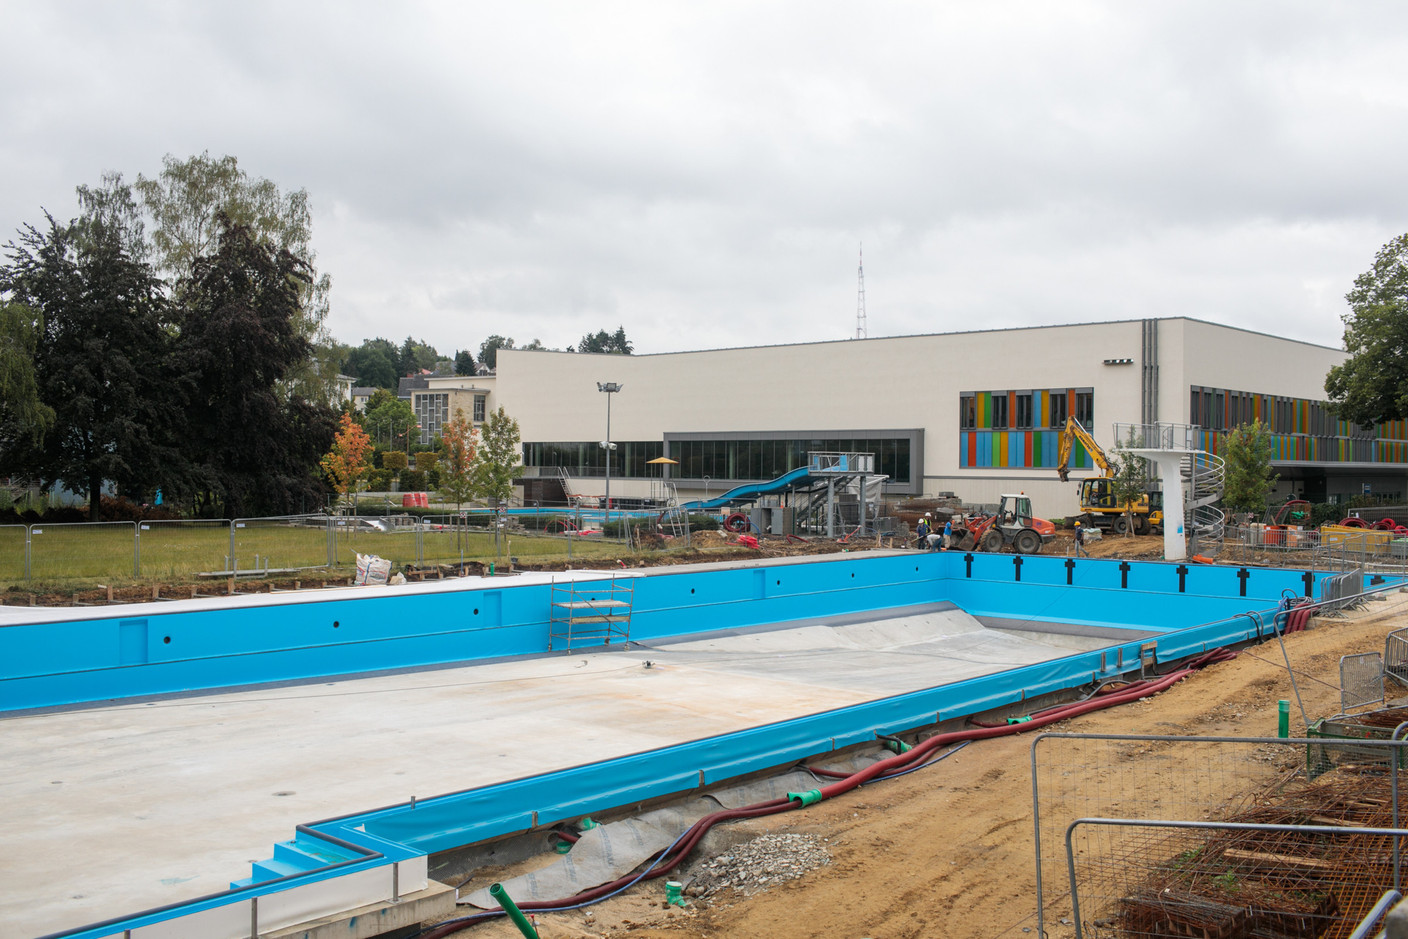 La piscine en plein air bénéficie de travaux de rénovation. (Photo: Matic Zorman/Maison Moderne)